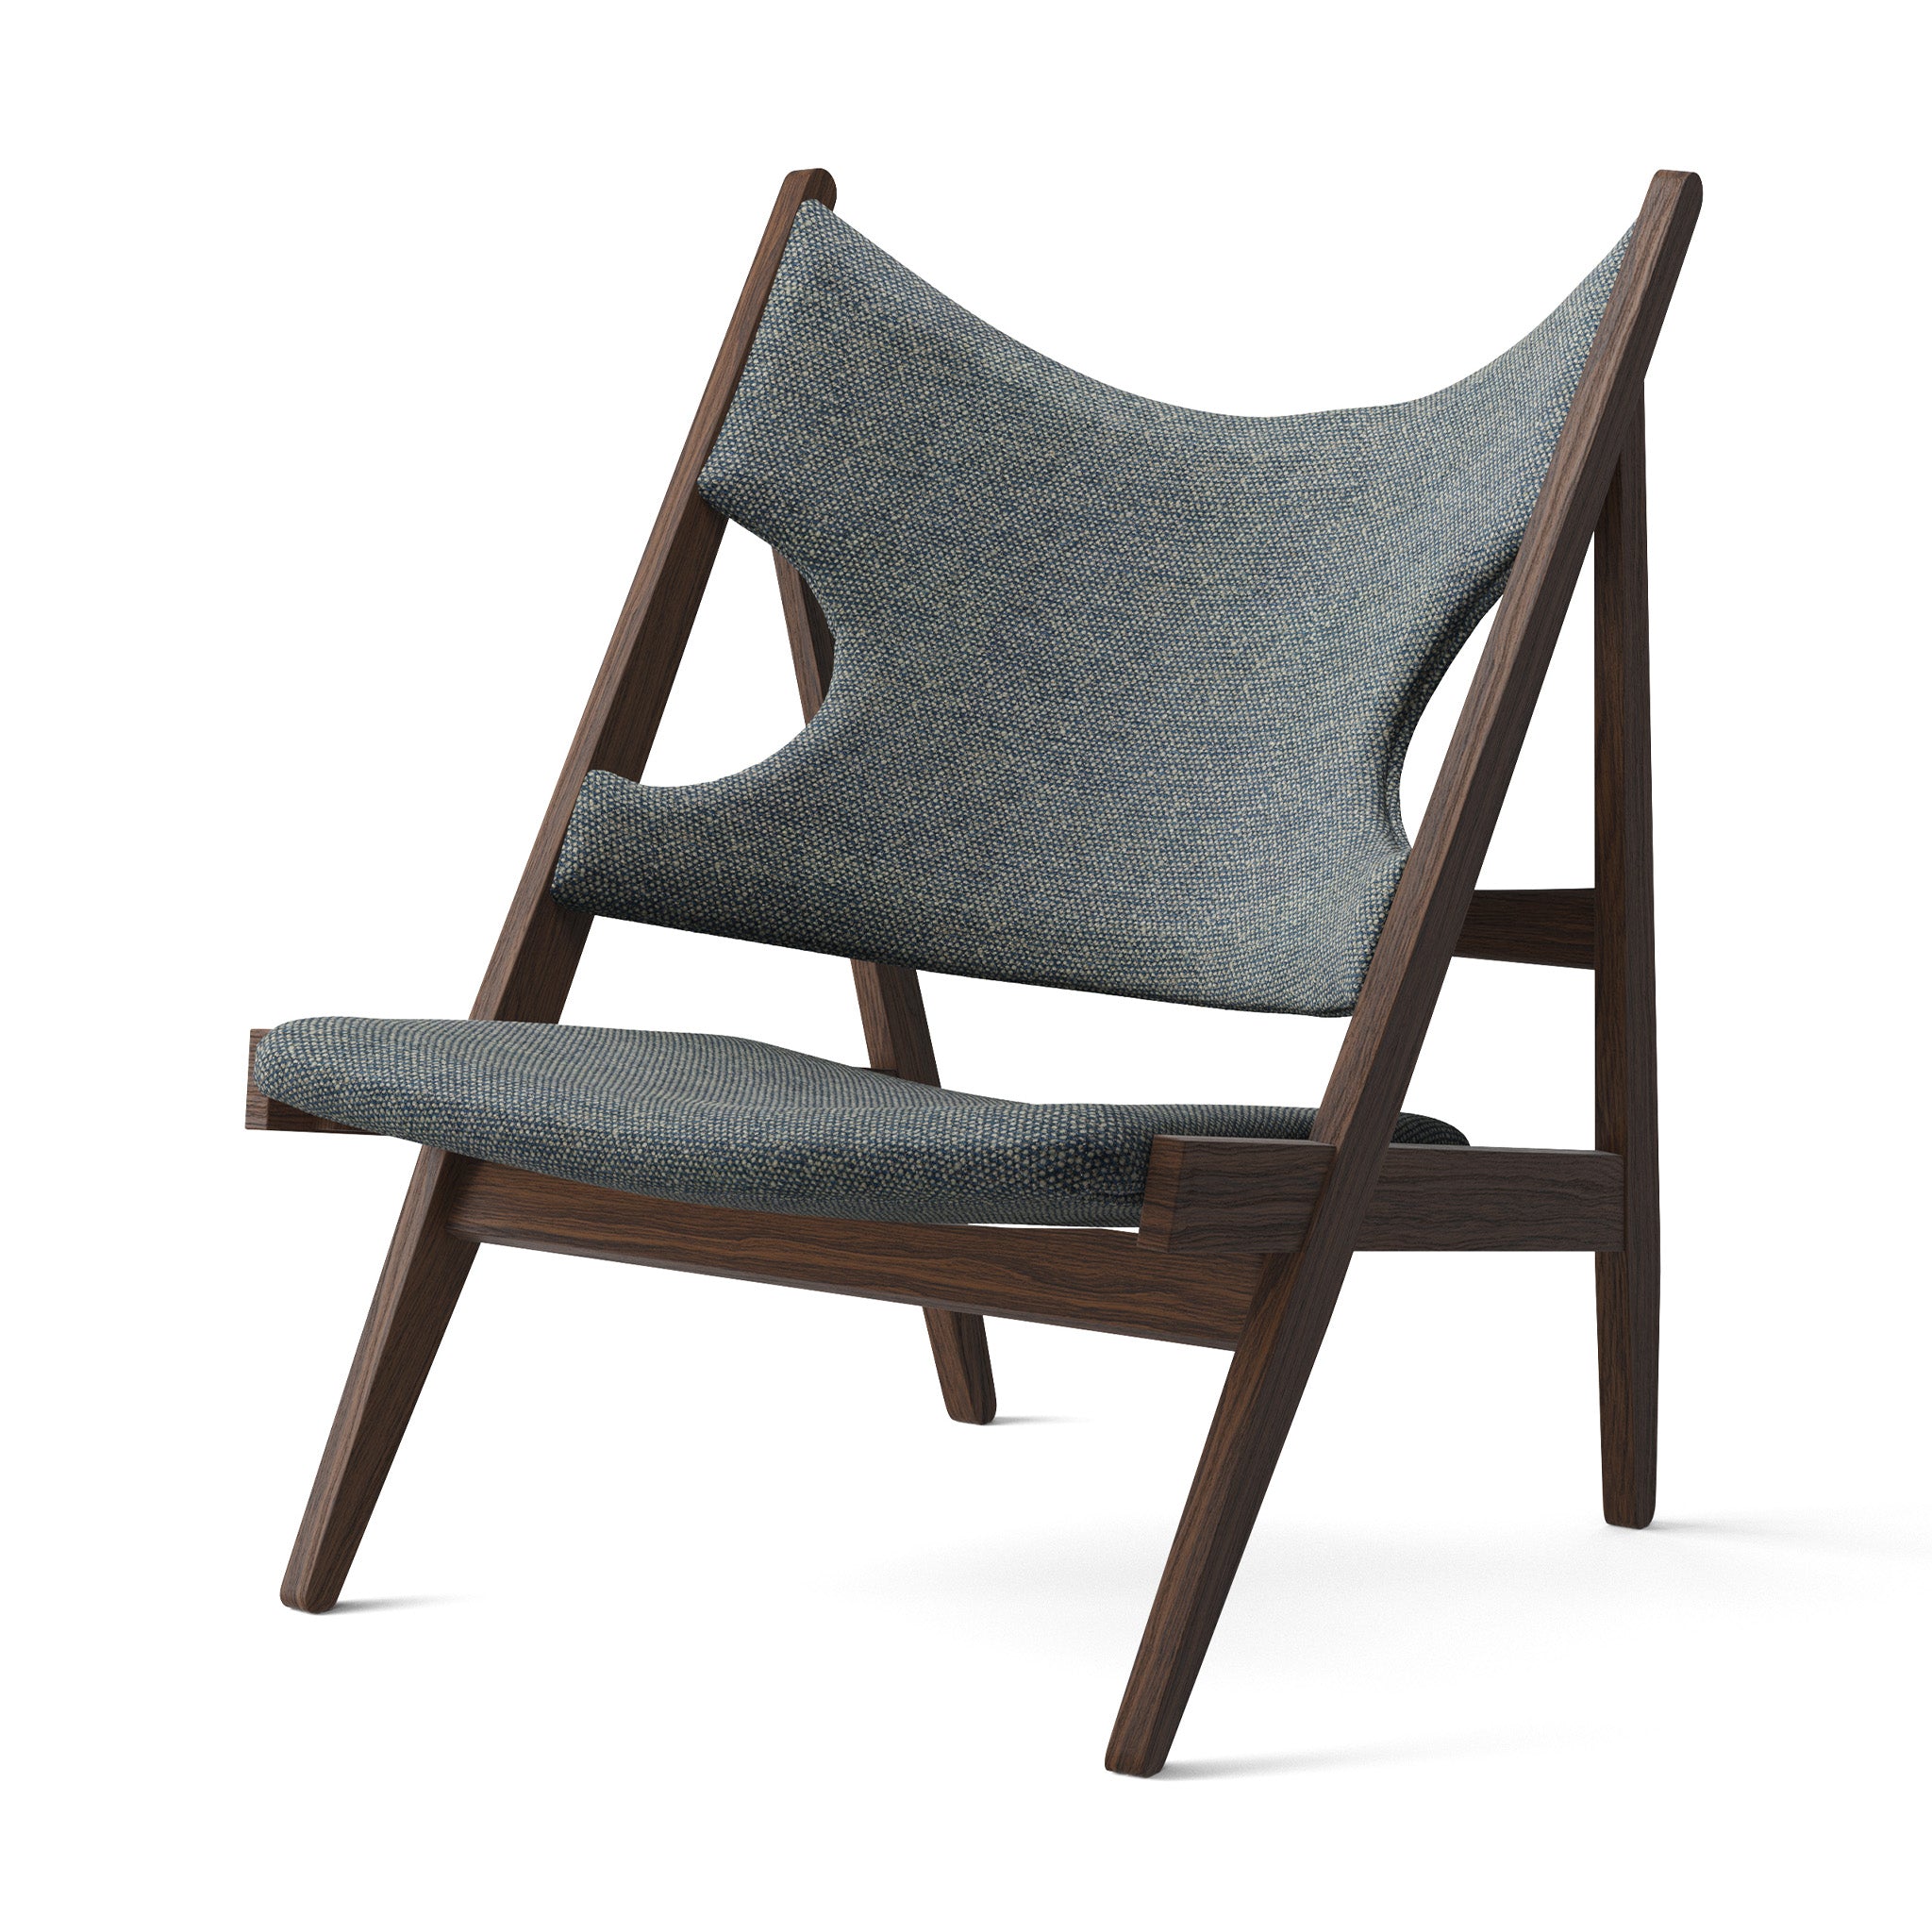 Knitting Chair by Ib Kofod-Larsen